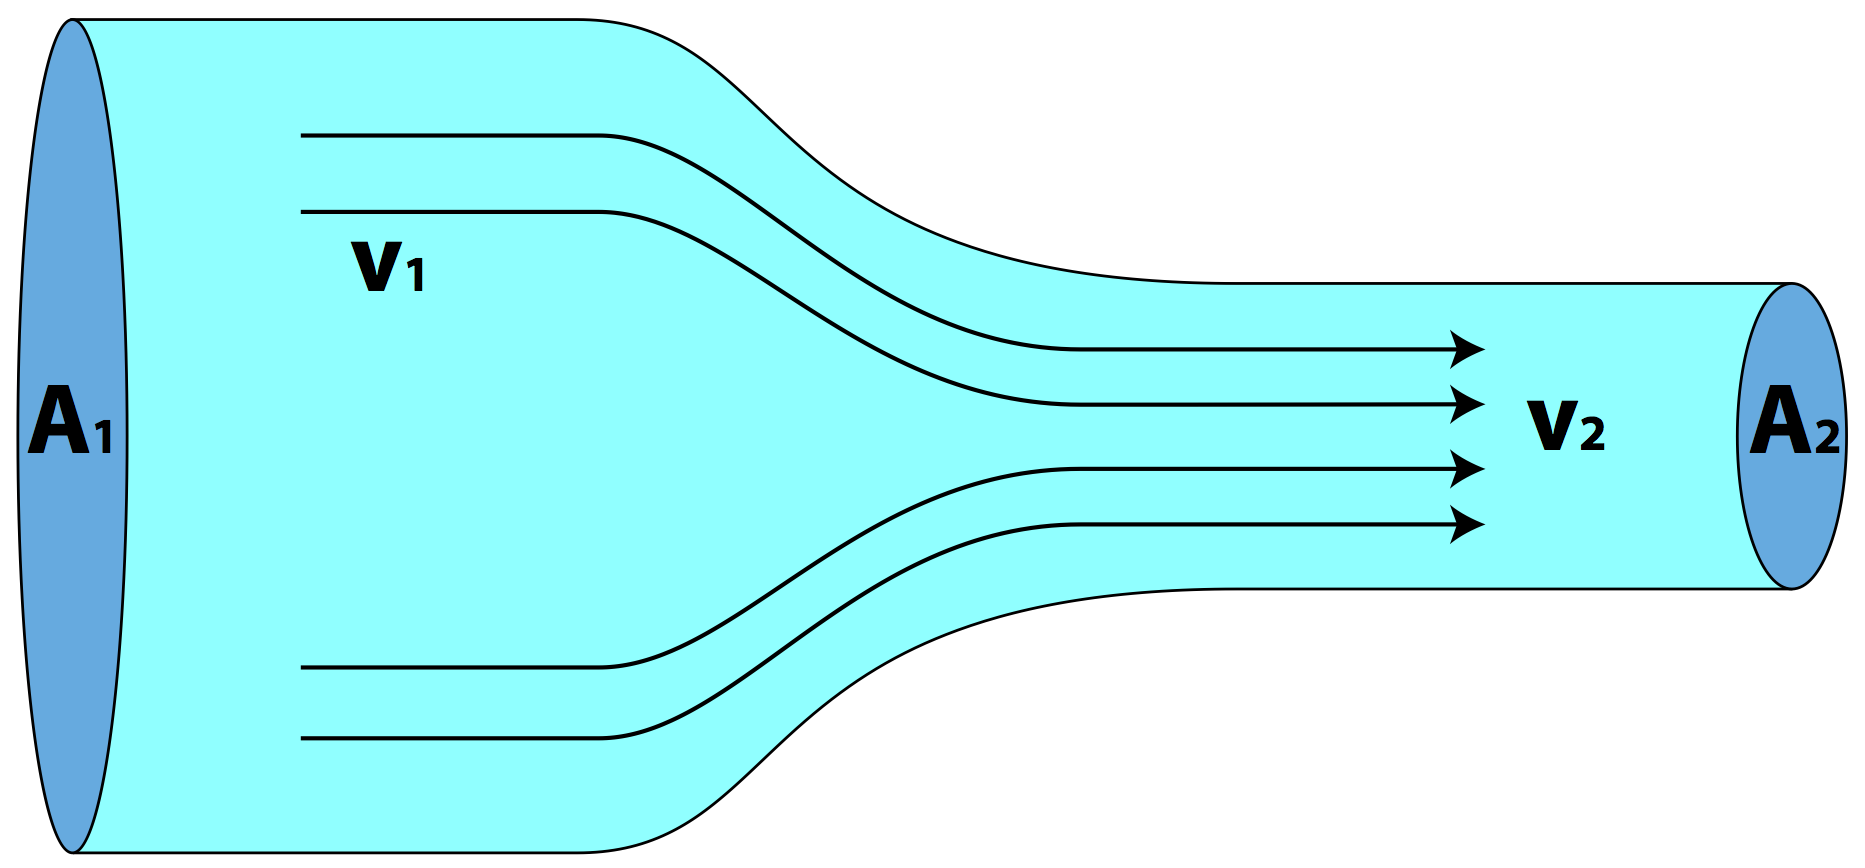 Скорость течения воды в трубе. Гидродинамика моделирование трубки Вентури. Гидродинамика Бернулли. Моделирование гидродинамики. Моделирование потока жидкости.